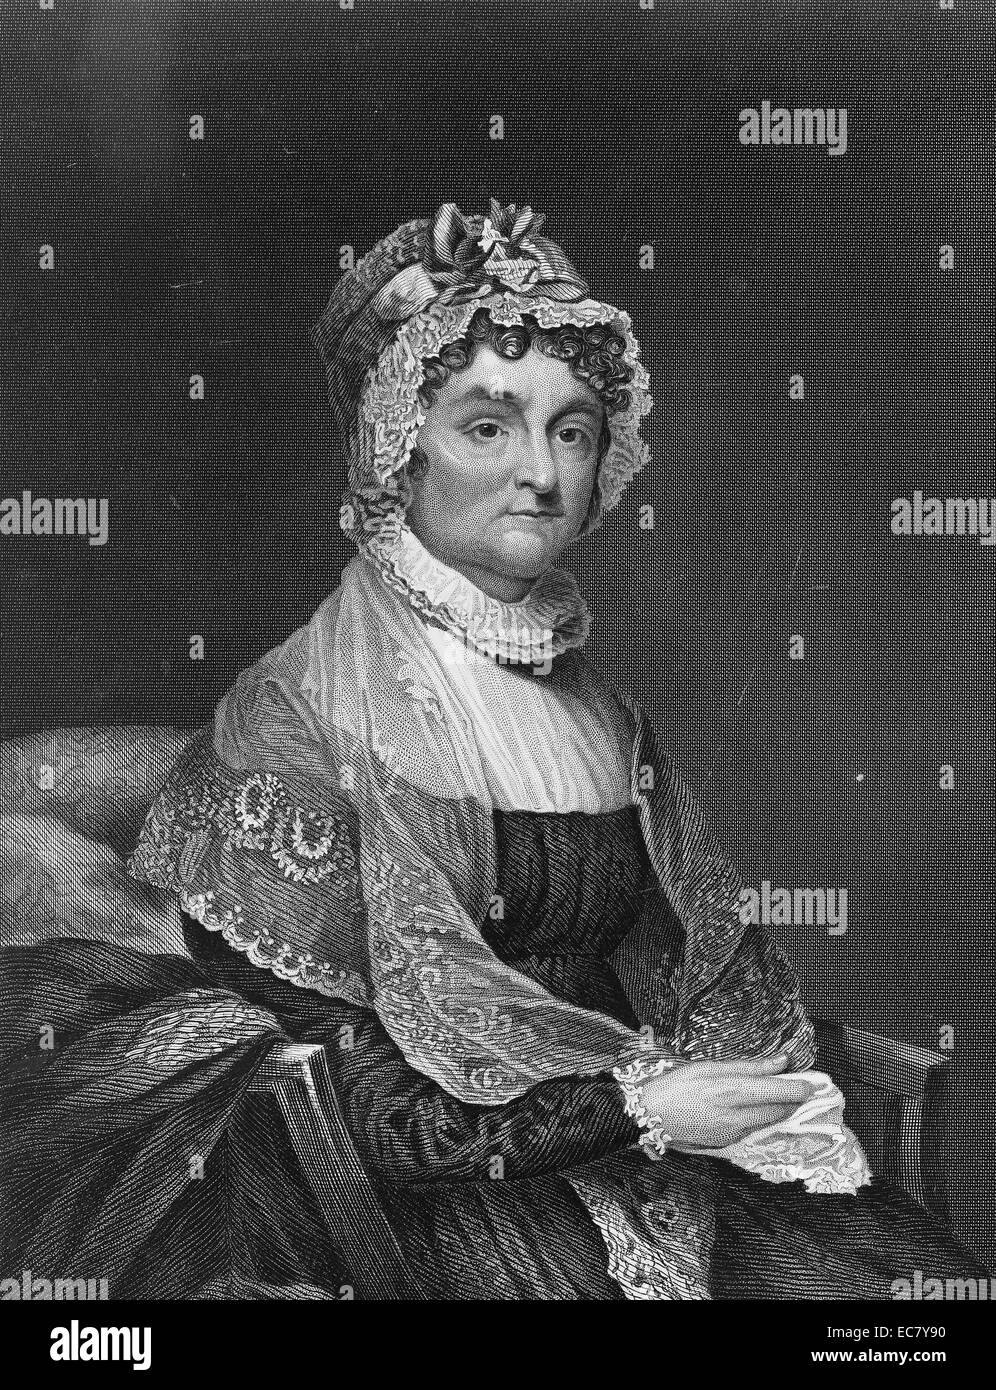 Frau John Adams (1744-1818) - Abigail Adams - war die Frau des zweiten US-Präsidenten John Adams. Sie war die Mutter der sechste Präsident John Quincy Adams und ihr Mann häufig gesucht Ihre Meinung über viele politische und staatliche Angelegenheiten. Stockfoto